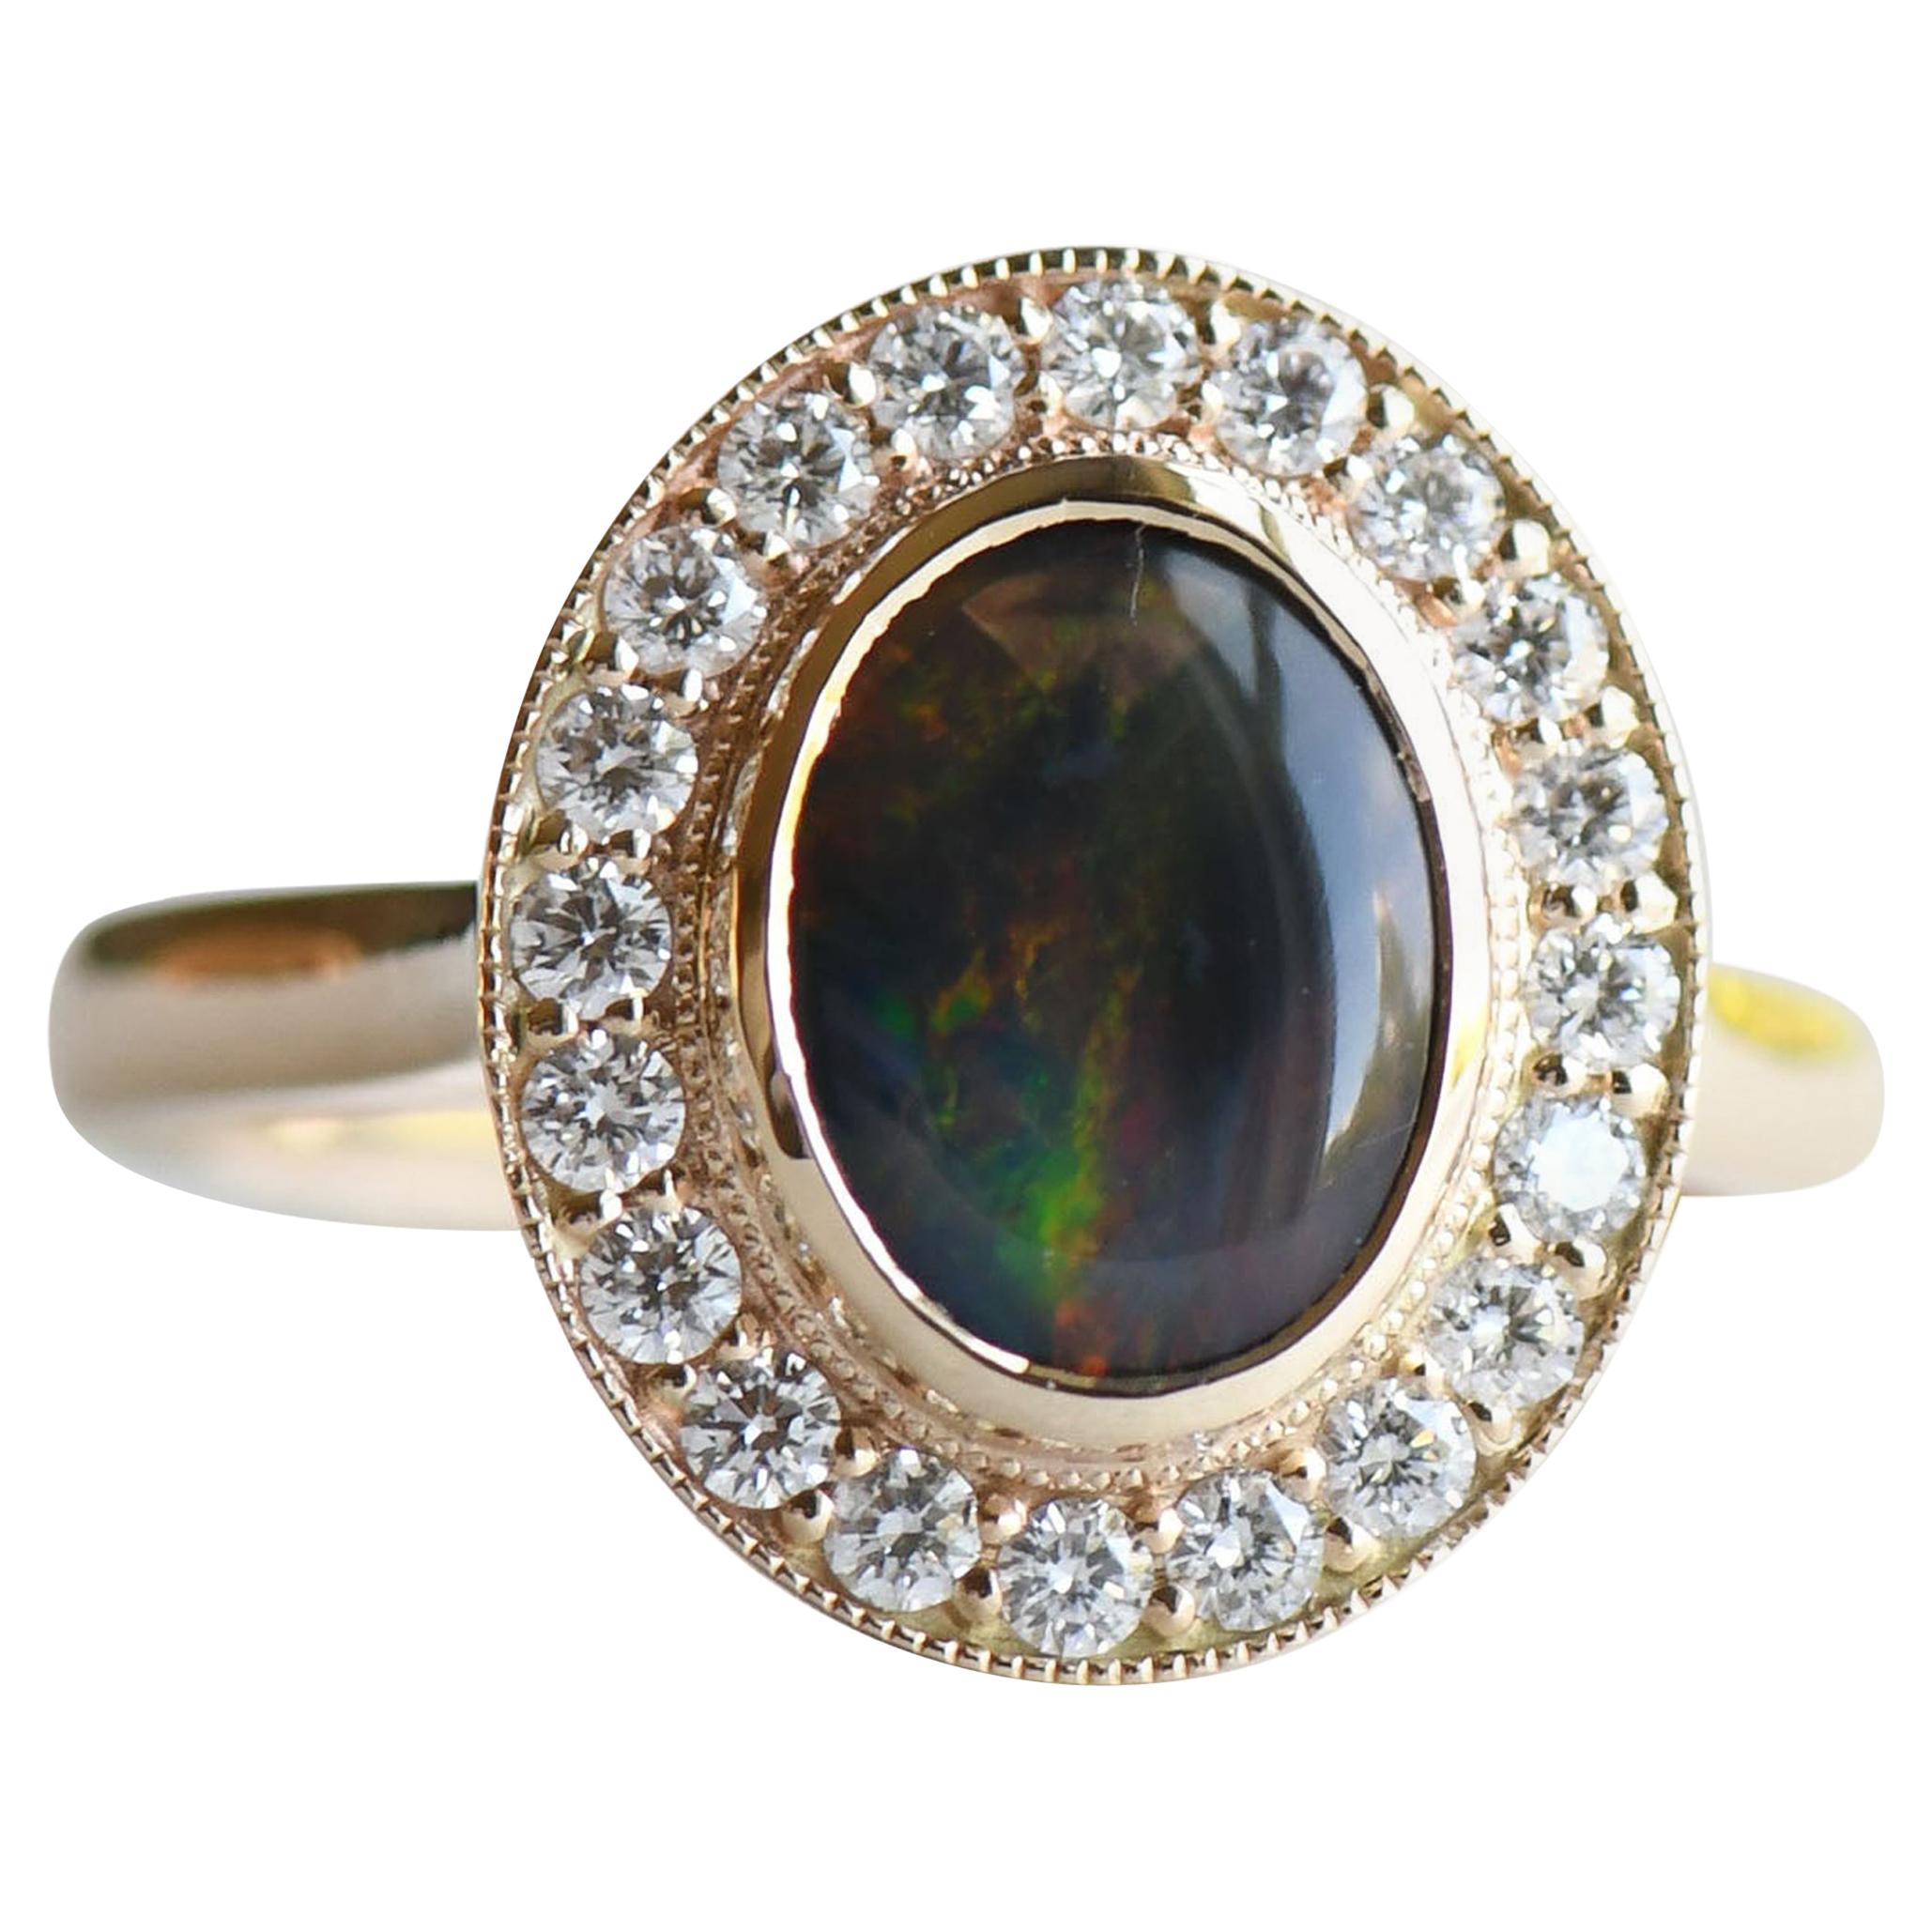 Australian Black Opal 1.188 Carat Ring, 14 Karat Gold Halo Ring